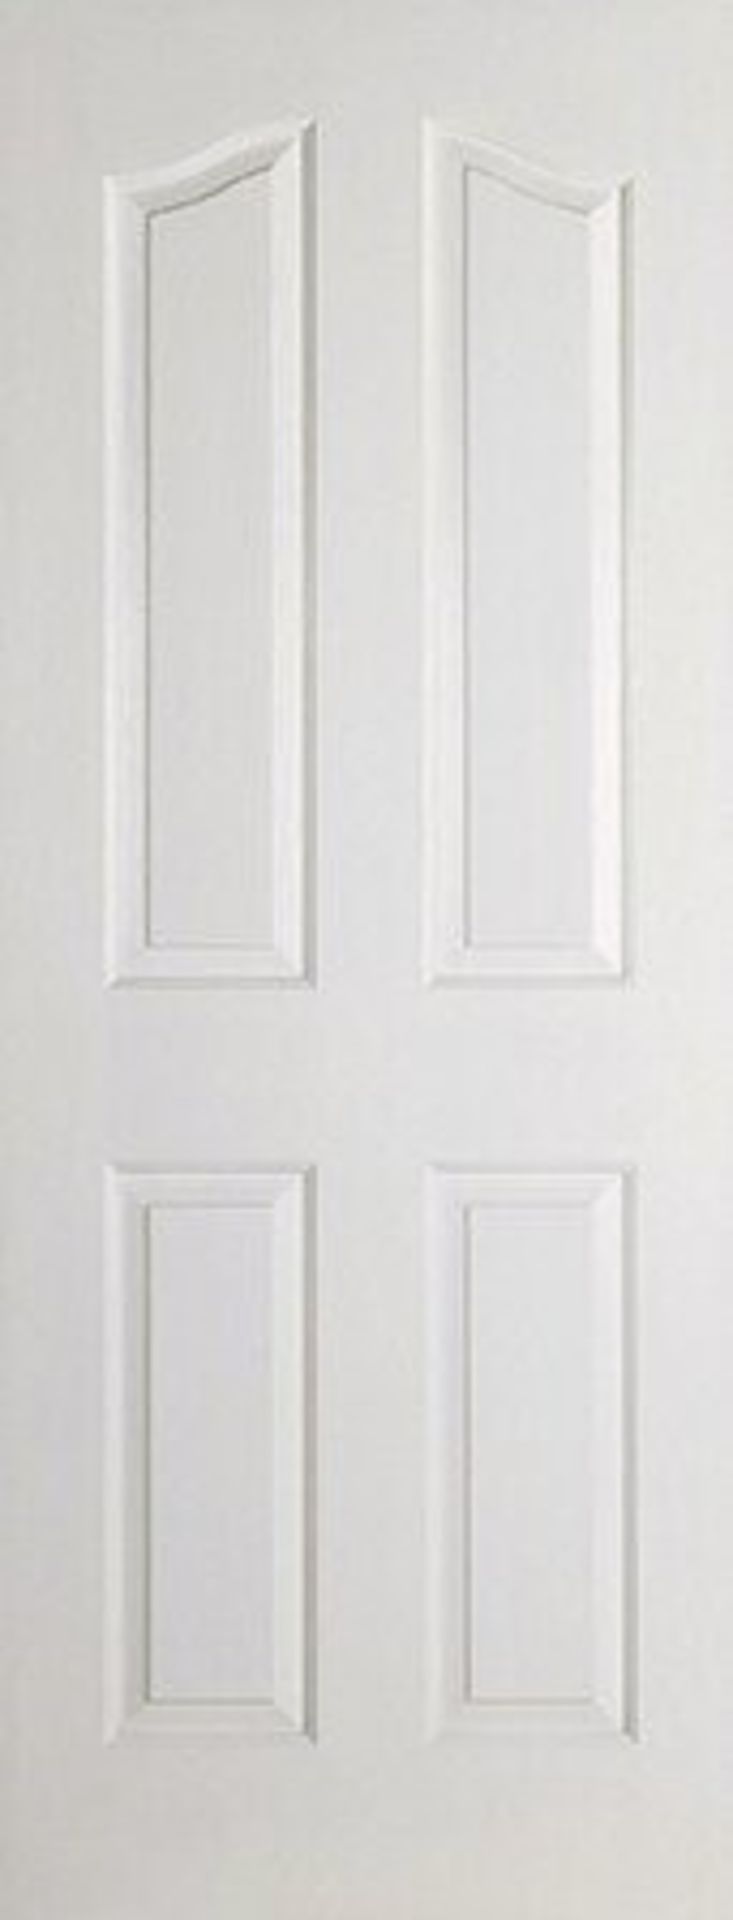 LPD Doors,Mayfair Panelled MDF Internal Door Primed RRP -£64.99(19867/13 -LPDD1798) (78x33")